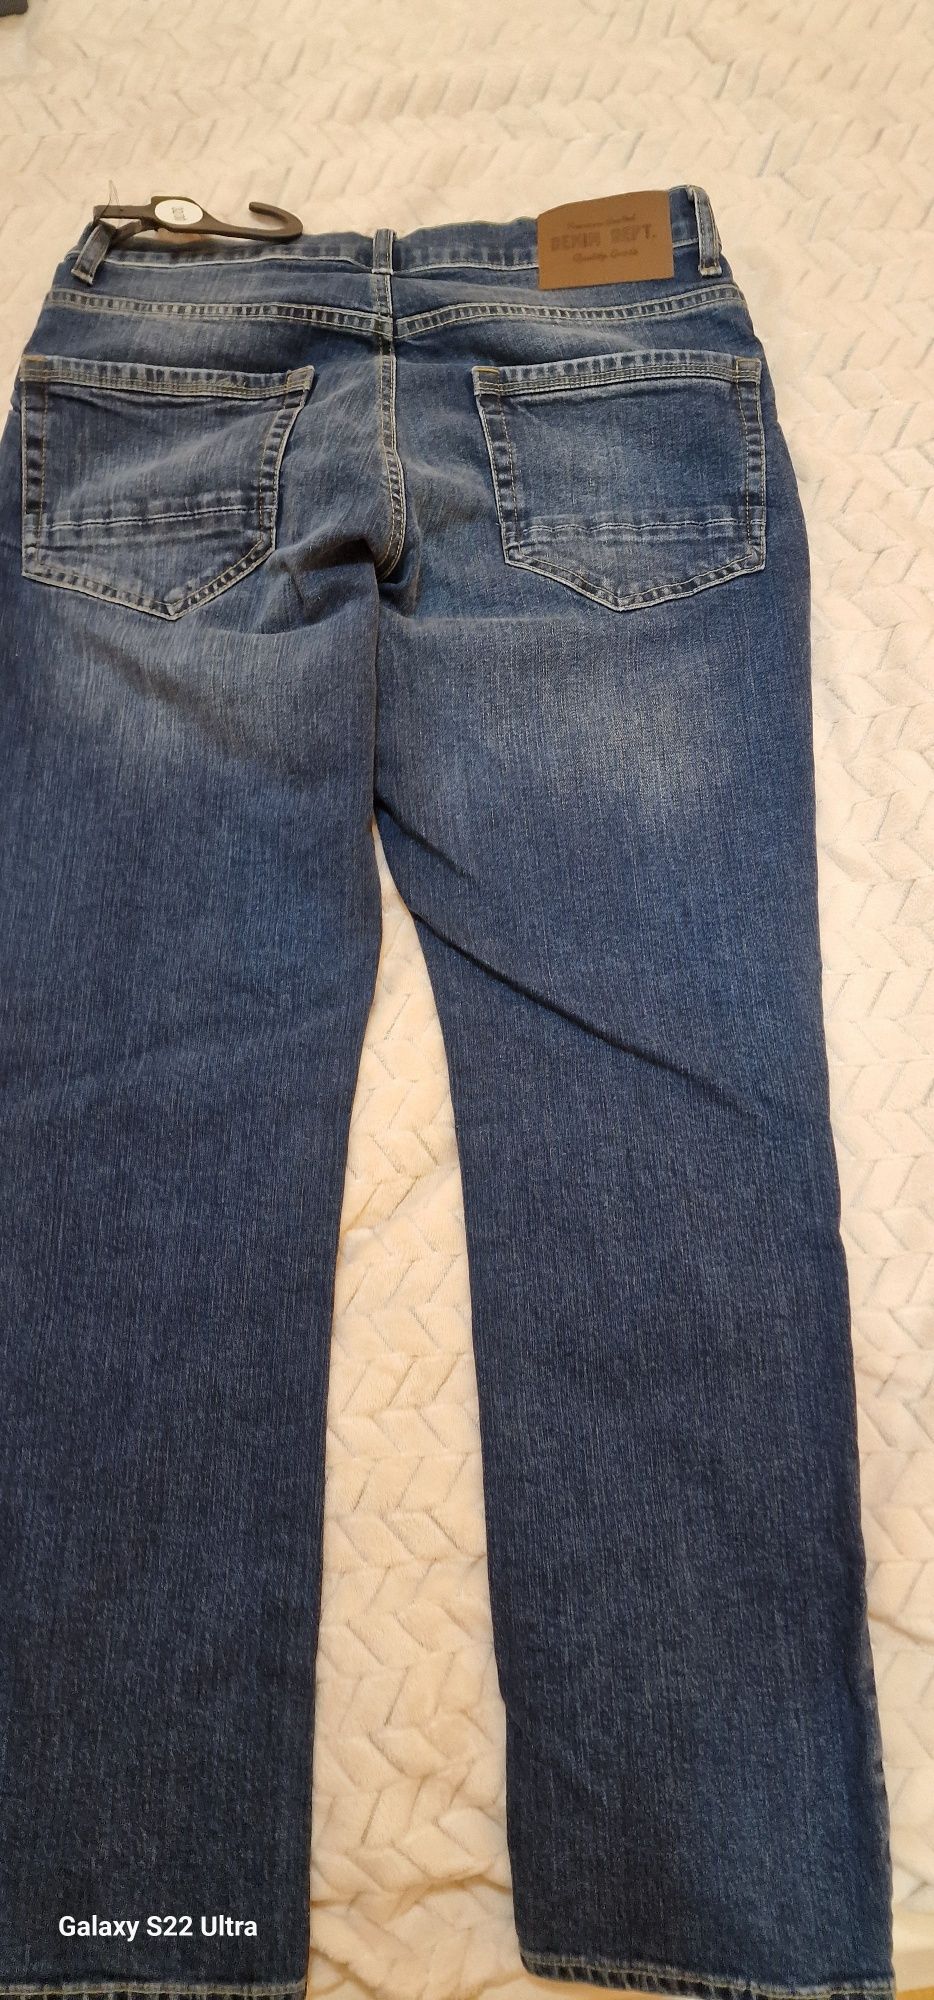 Spodnie męskie jeansowe nowe pas 32 nogawka 30 na wzrost 172 slim